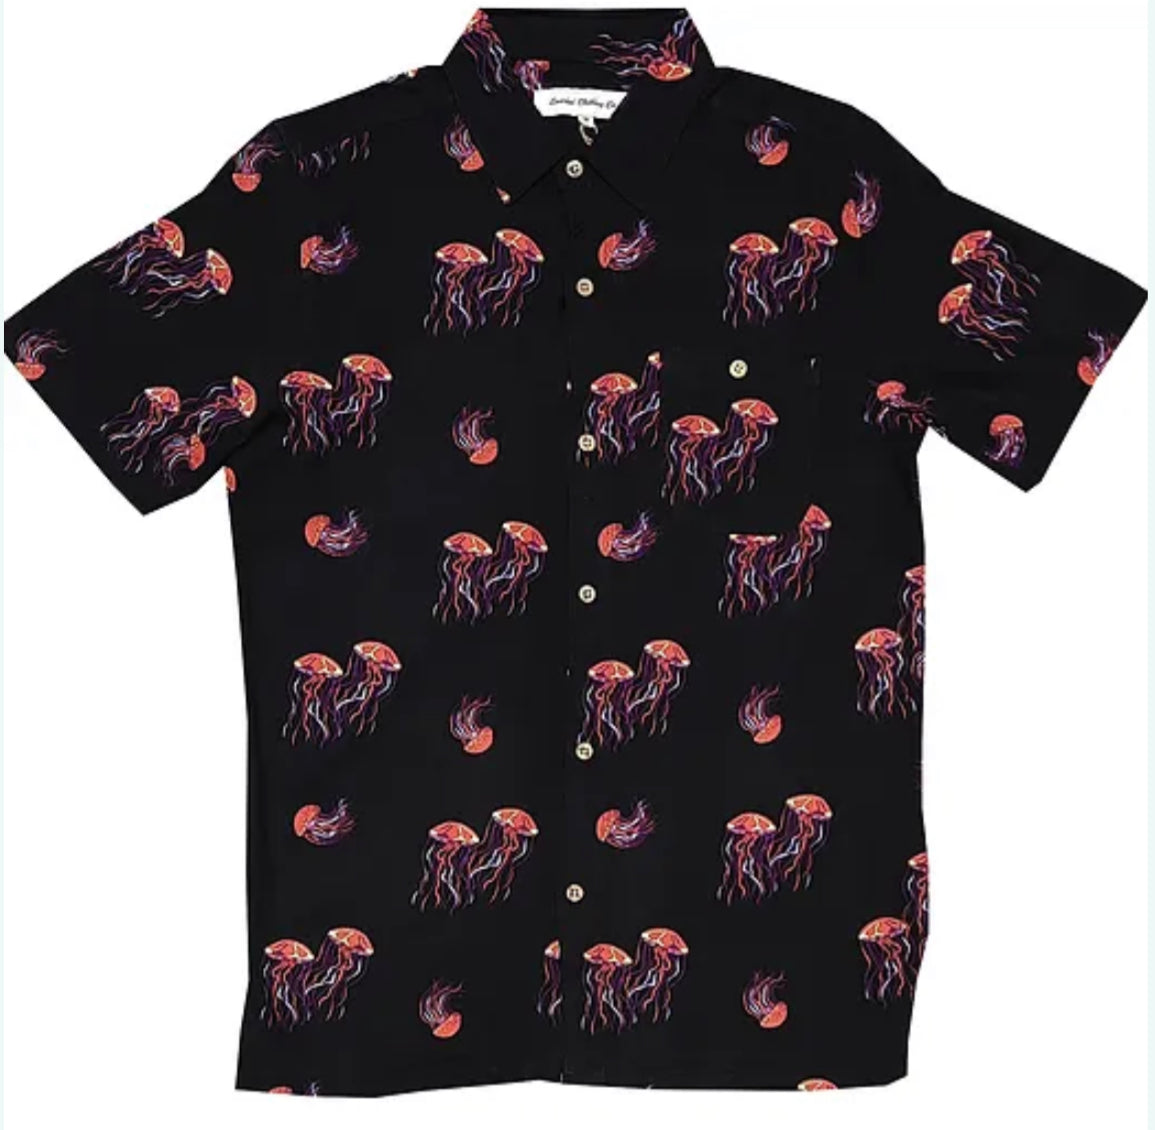 Molokai / Lanikai Vintage 100% Cotton Shirt- black with ￼jelly fish